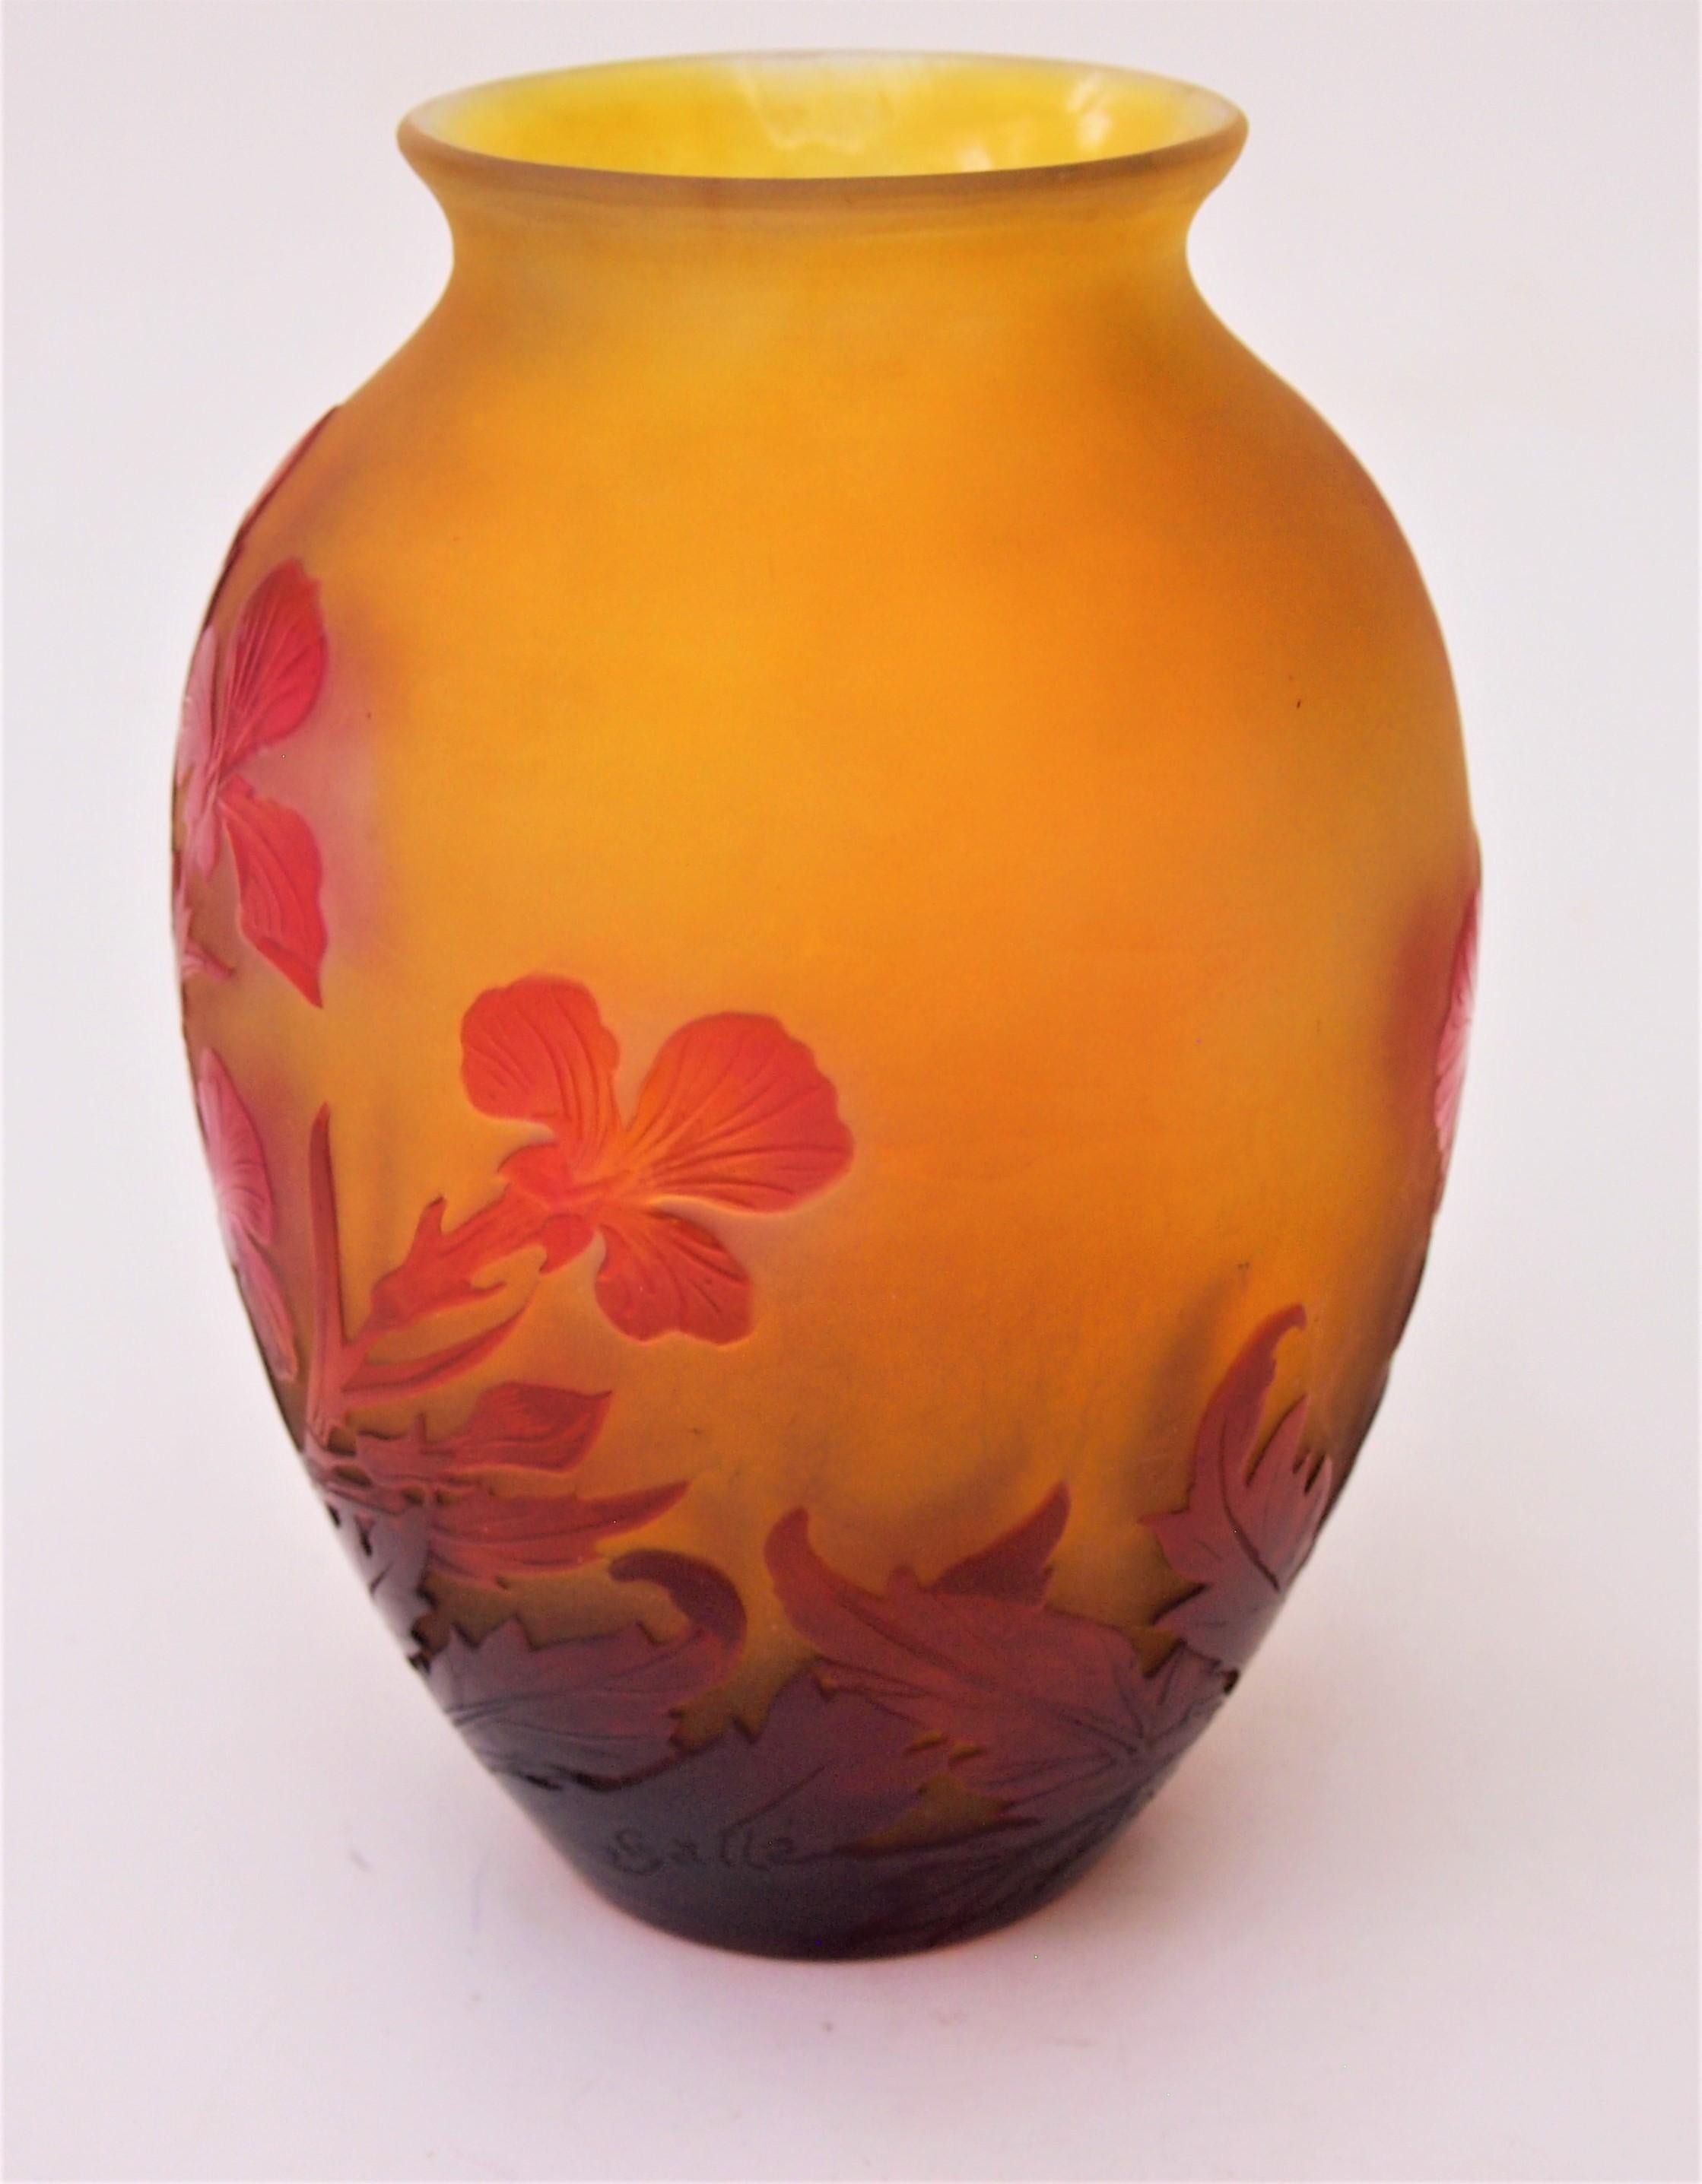 Art nouveau français Emile Gallé  vase en forme de boule représentant des iris en rouge et orange avec une ouverture légèrement évasée. Il présente un fin polissage interne pour faire ressortir le rouge des iris (cette technique est parfois appelée